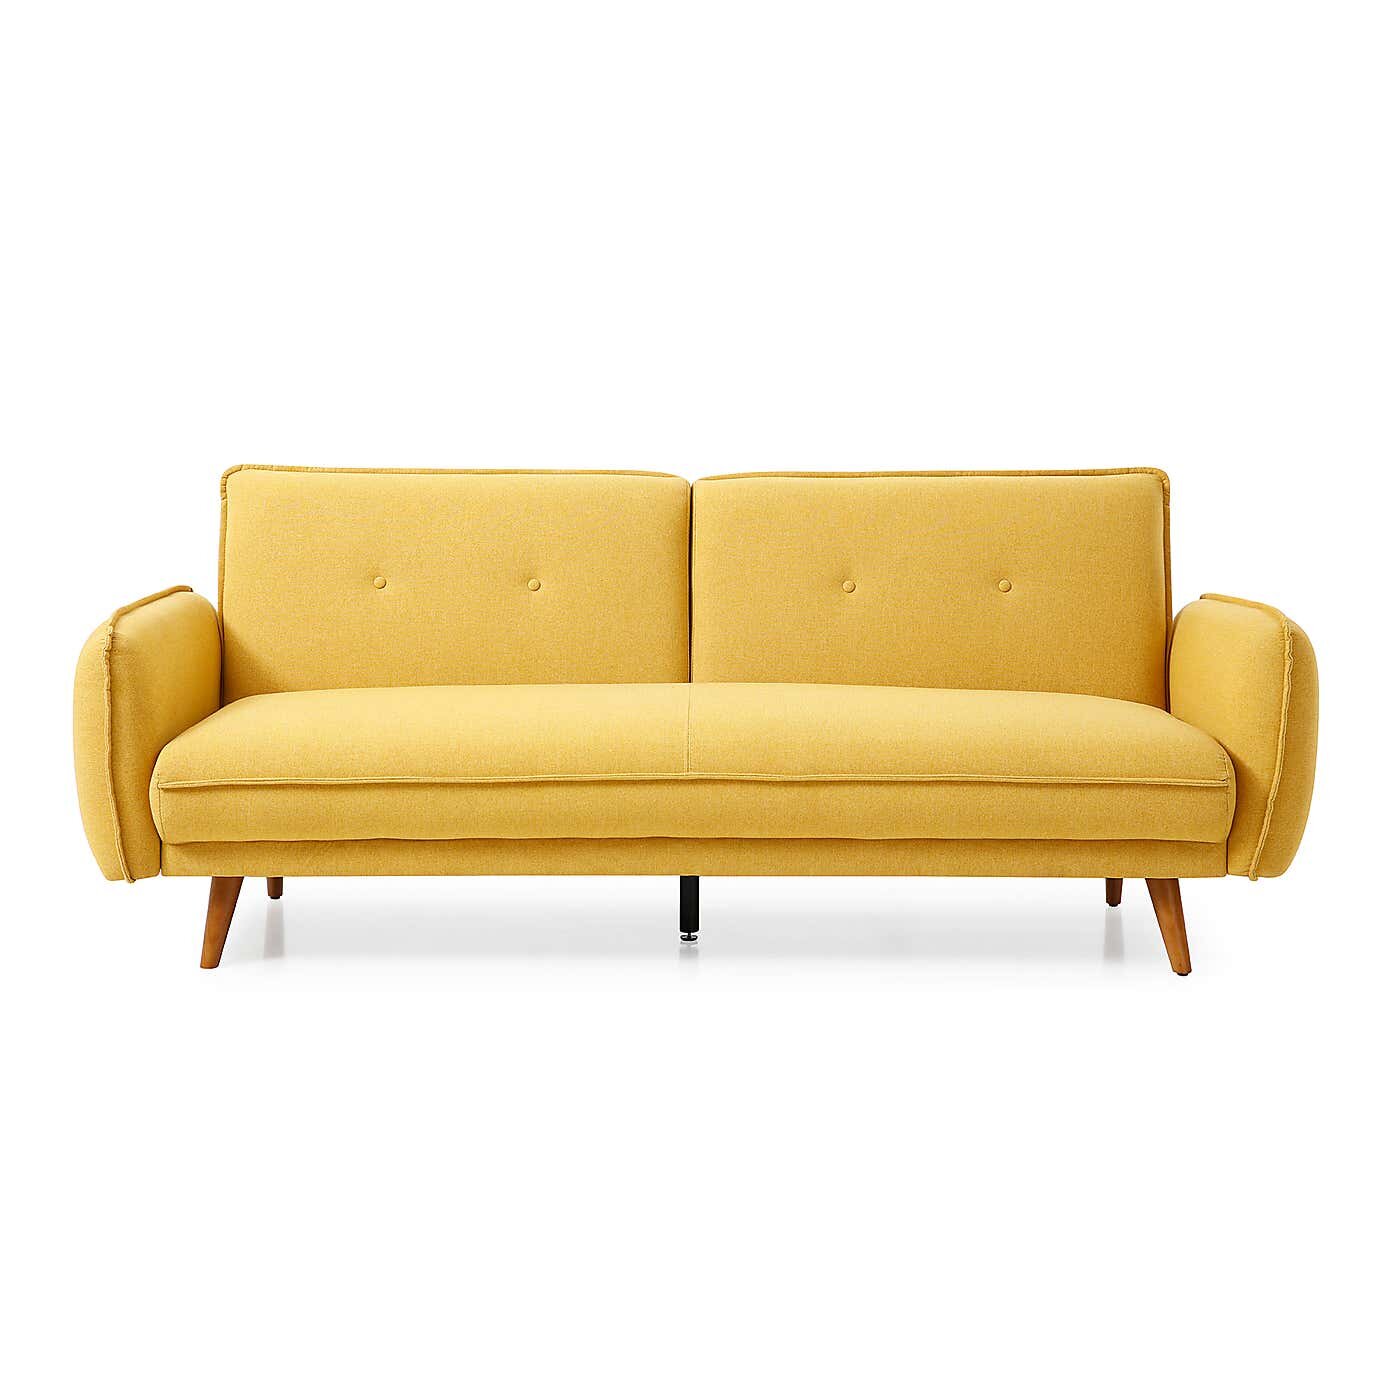 Sofa pictures. Диван Примавера Mustard. Yellow Sofa. Кэт софа желтые. Grimhult Yellow Sofa.